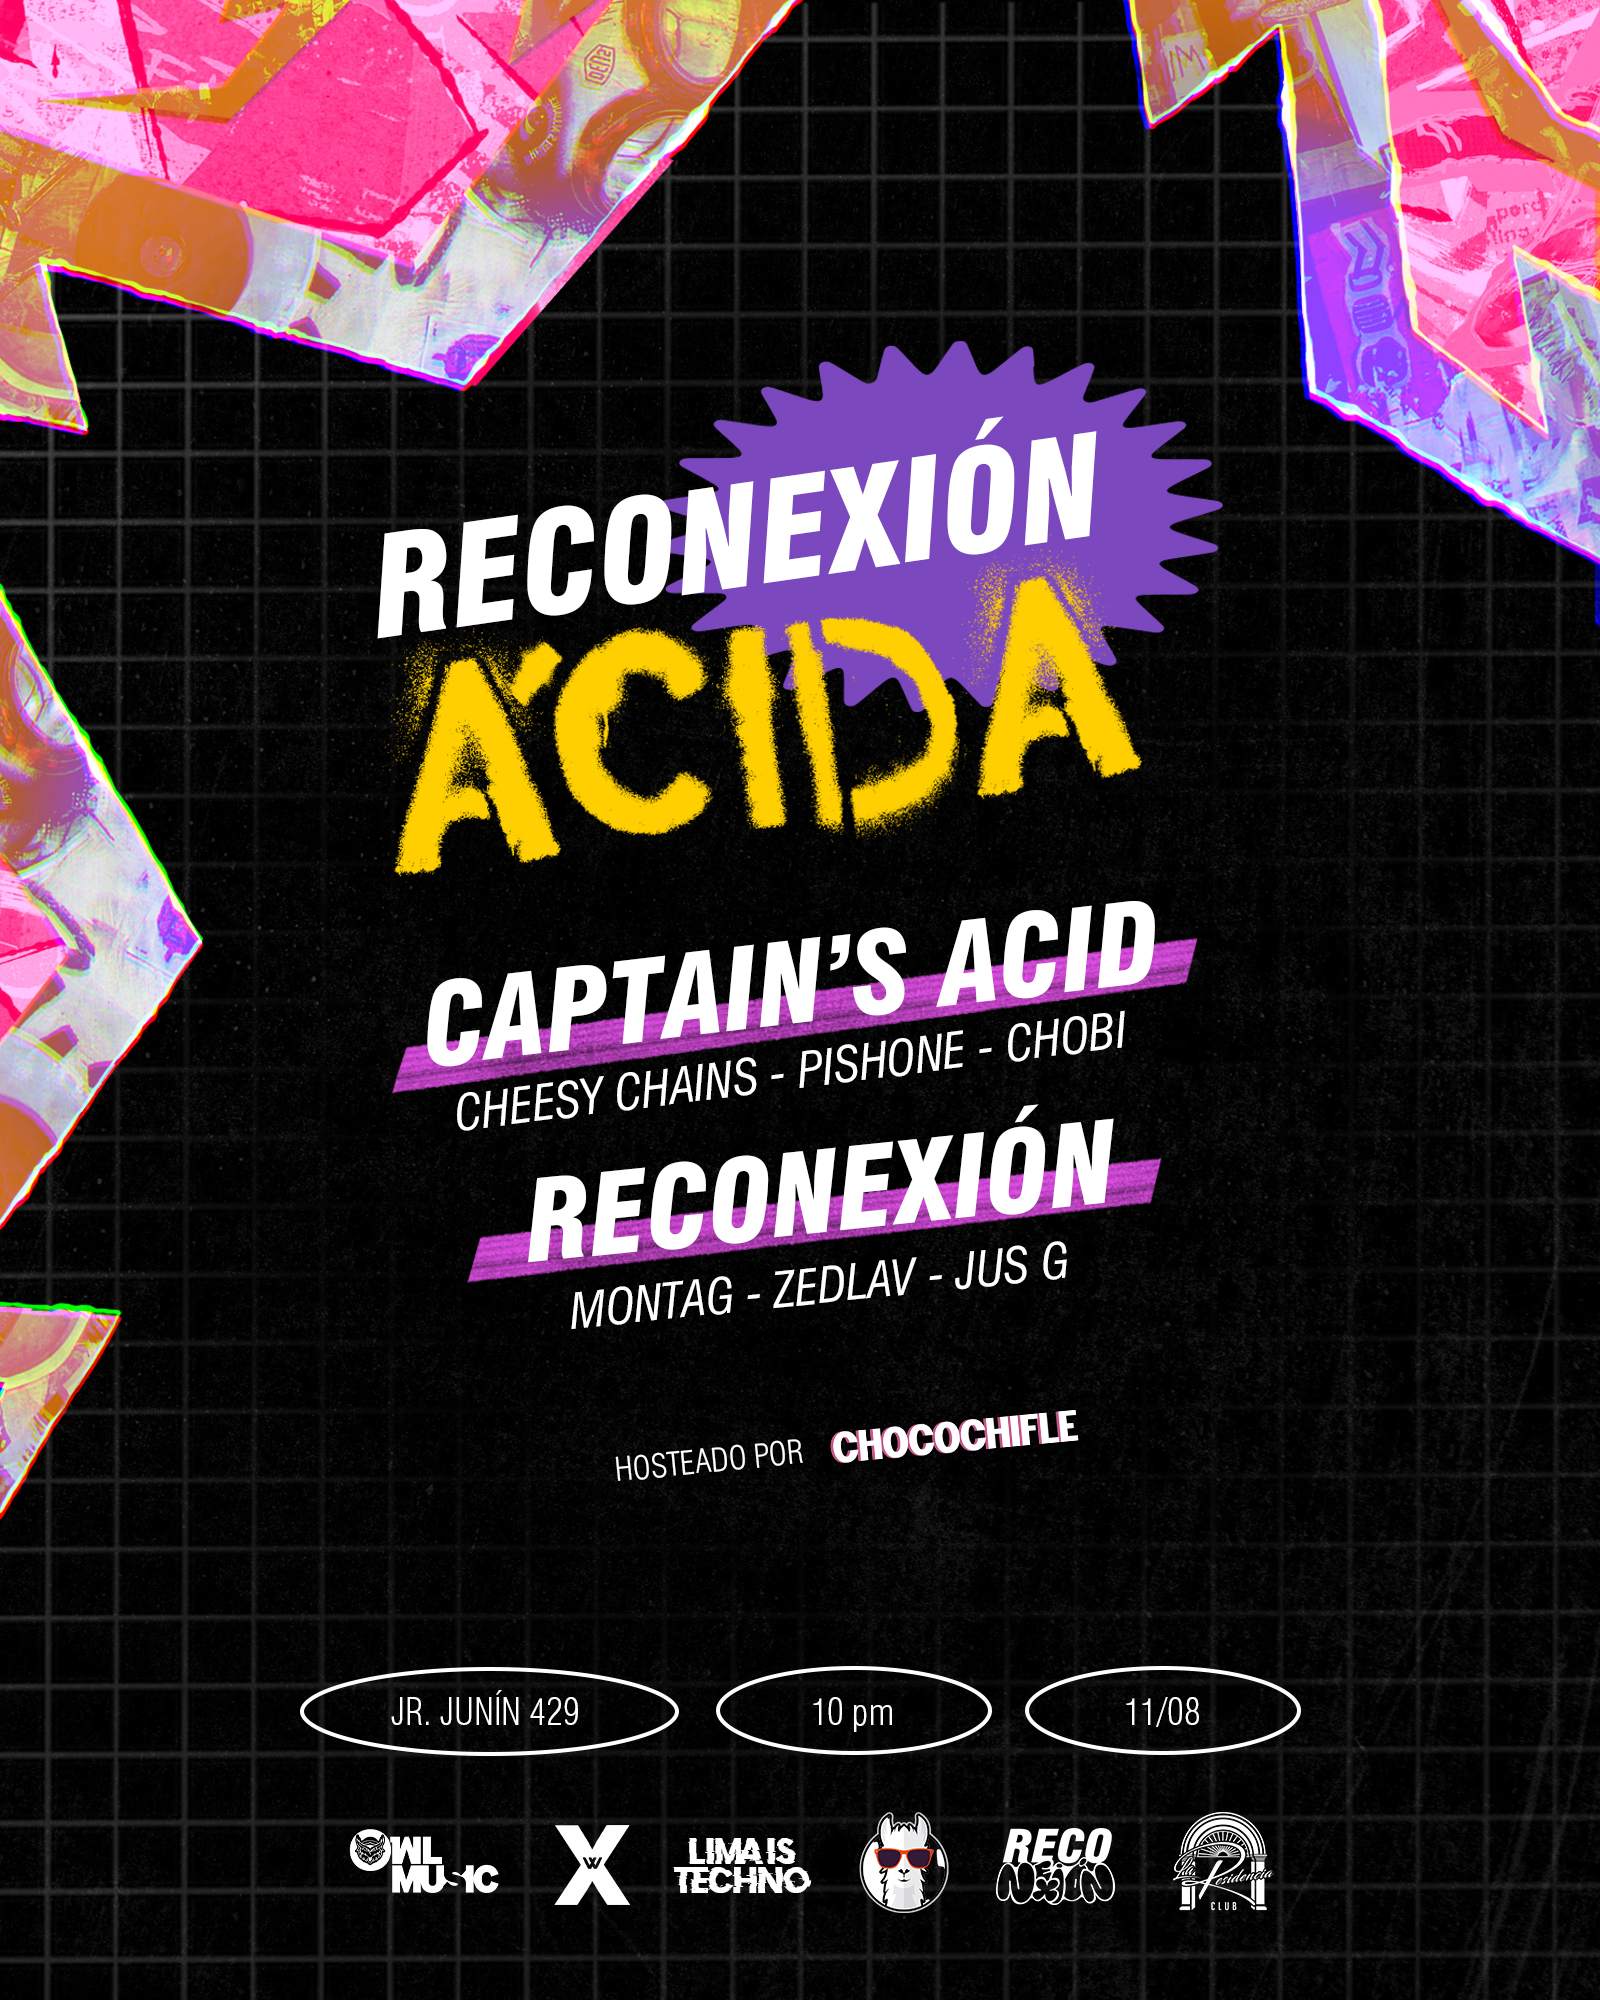 ReConexión Acida - フライヤー表